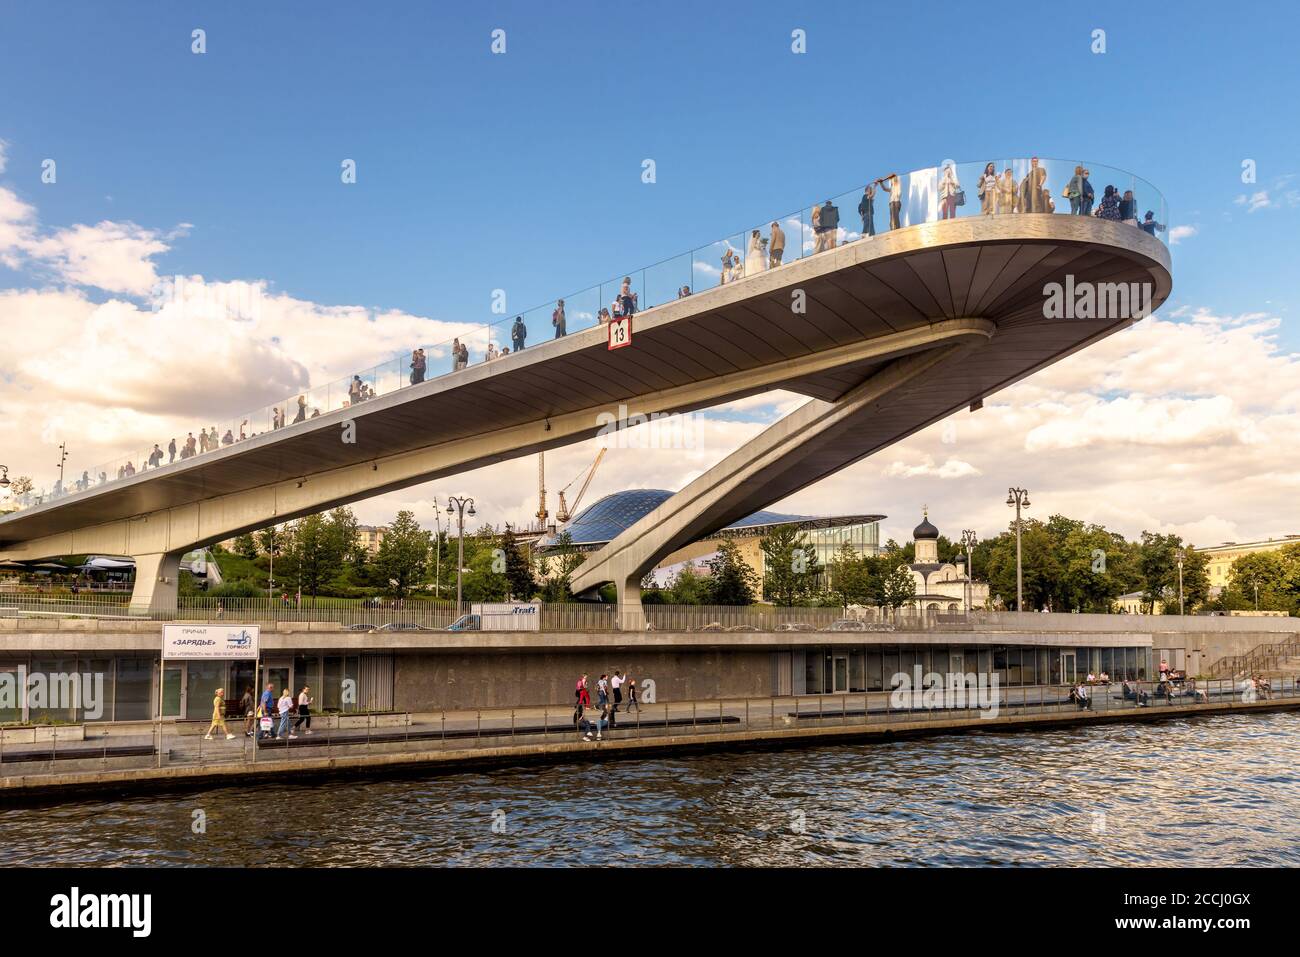 Moscú - 21 de agosto de 2020: Puente flotante sobre el río Moskva en el parque Zaryadye, Moscú, Rusia. Zaryadye es la atracción turística moderna de Moscú. Increíble u Foto de stock